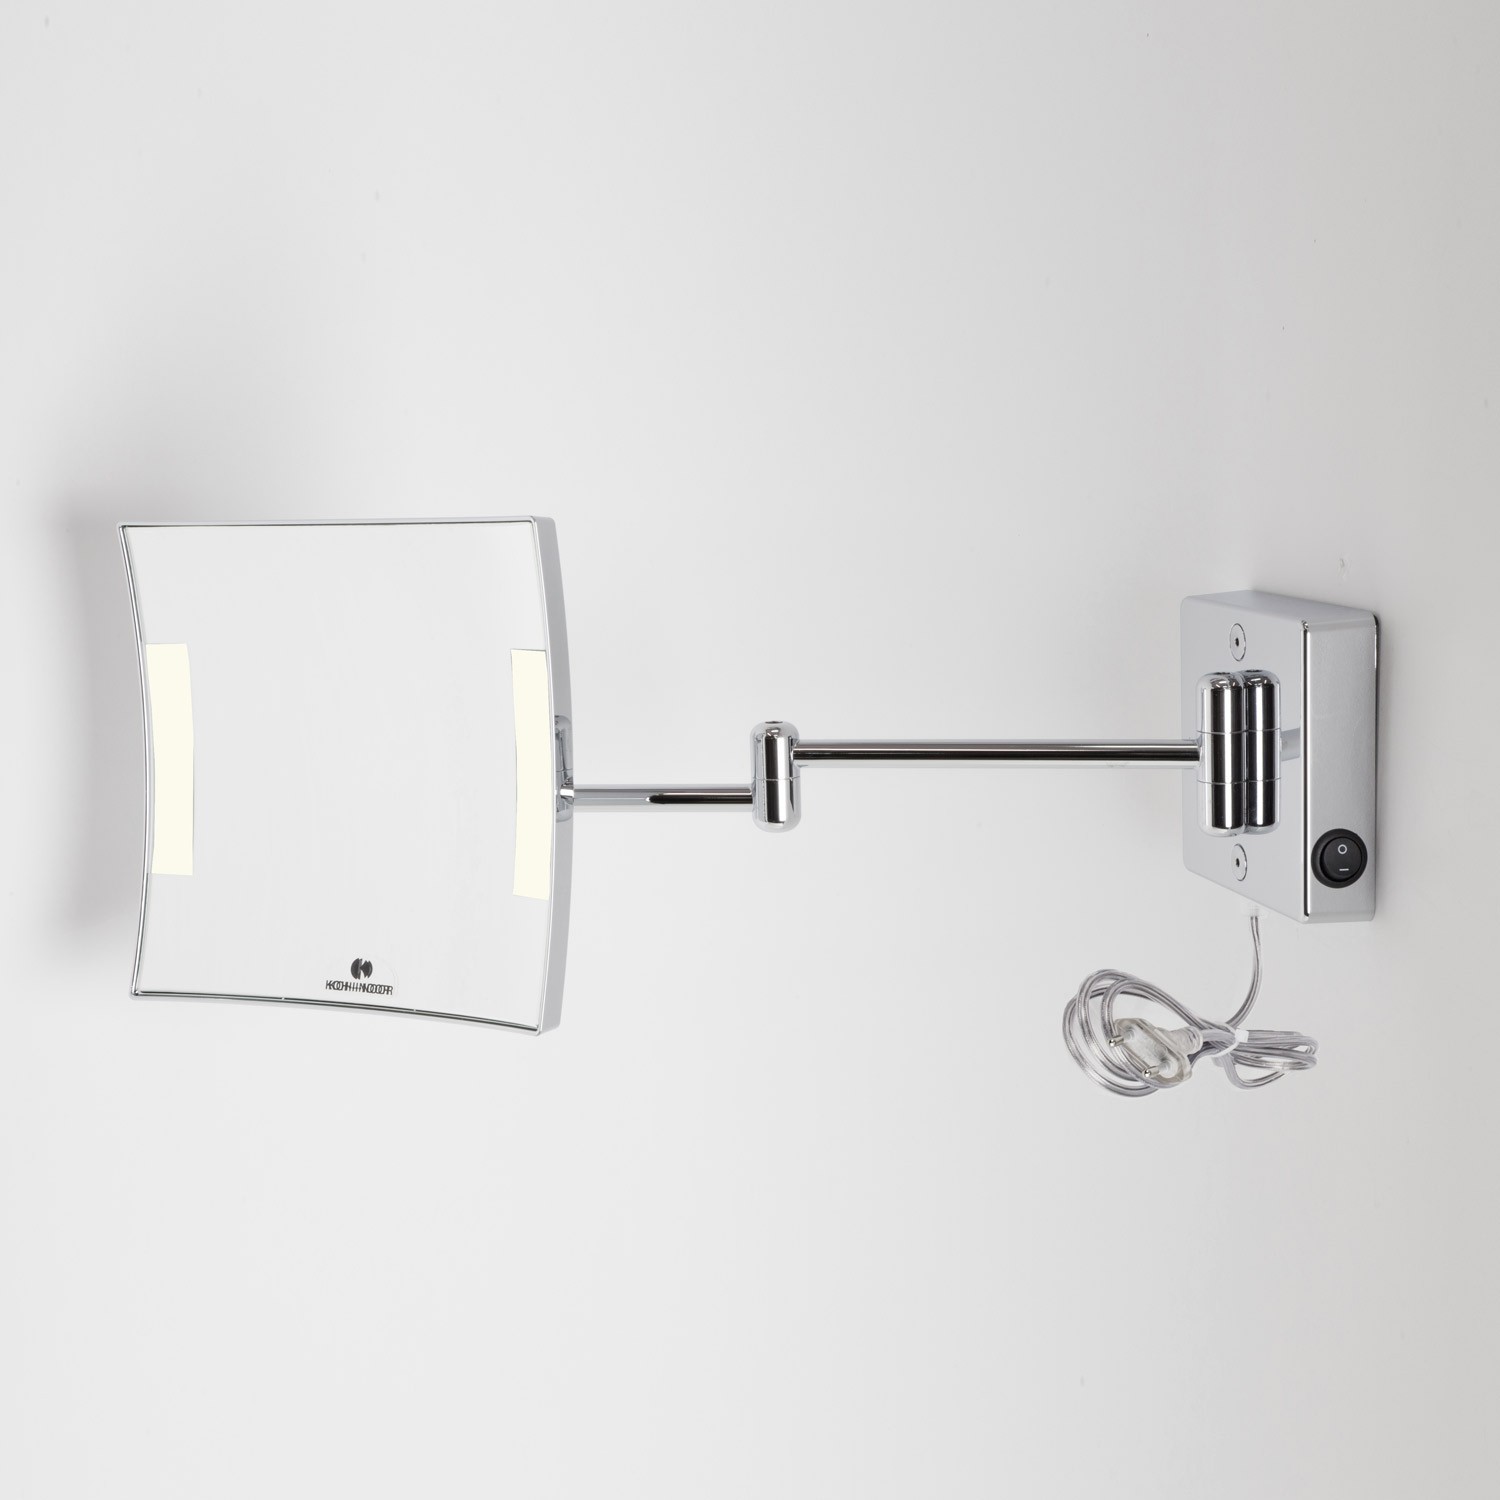 Specchio ingranditore x3 quadrato da parete cromo. 2 Braccia. Illuminazione  a LED.Alimentazione esterna con spina.